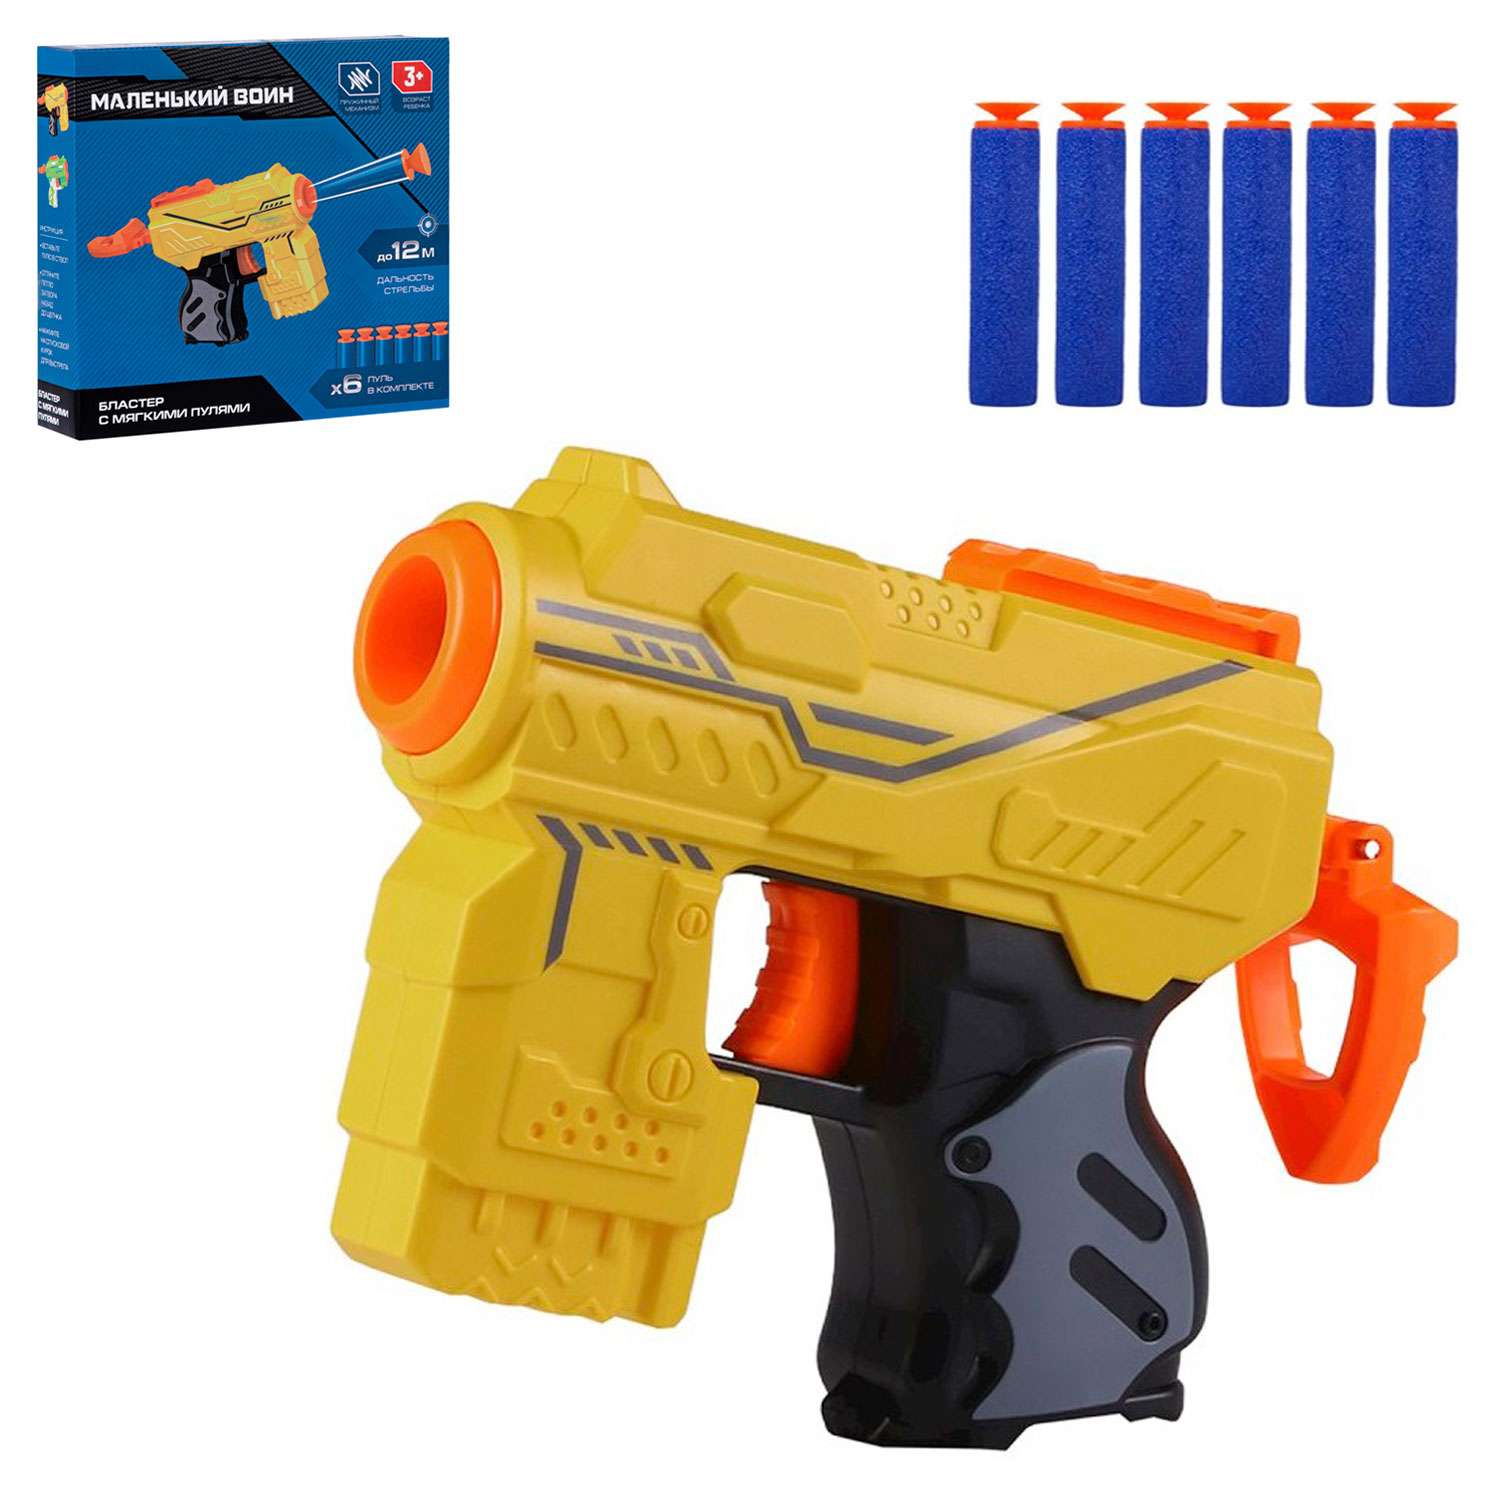 Игрушечное оружие Маленький Воин Бластер с мягкими пулями ручной затвор JB0211466 - фото 3